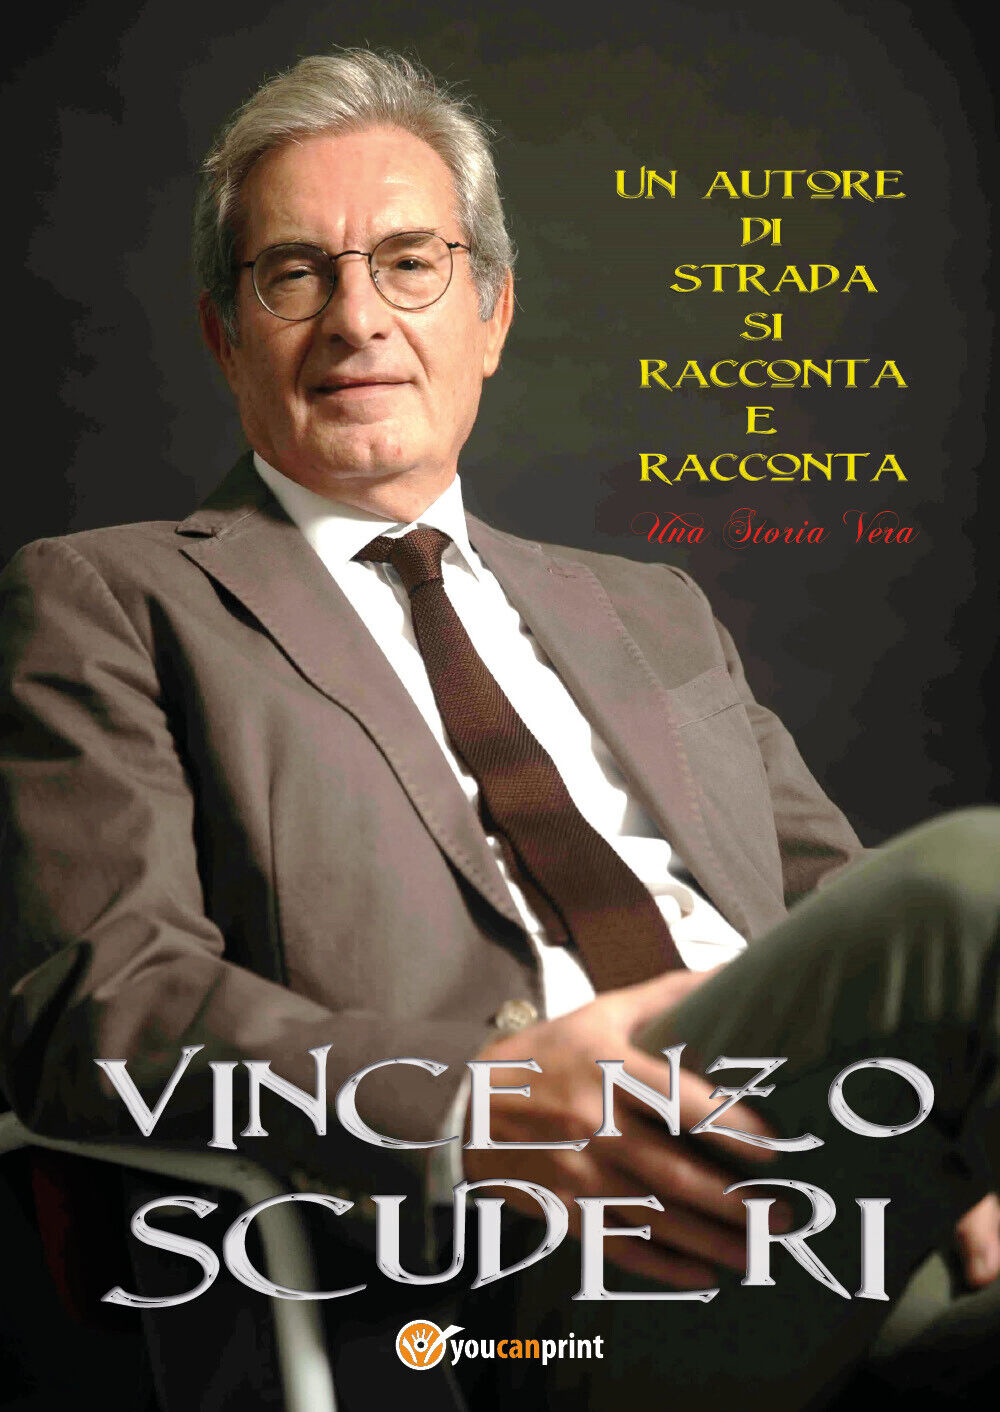 Un autore di strada si racconta e racconta una storia vera di Vincenzo Scuderi, 